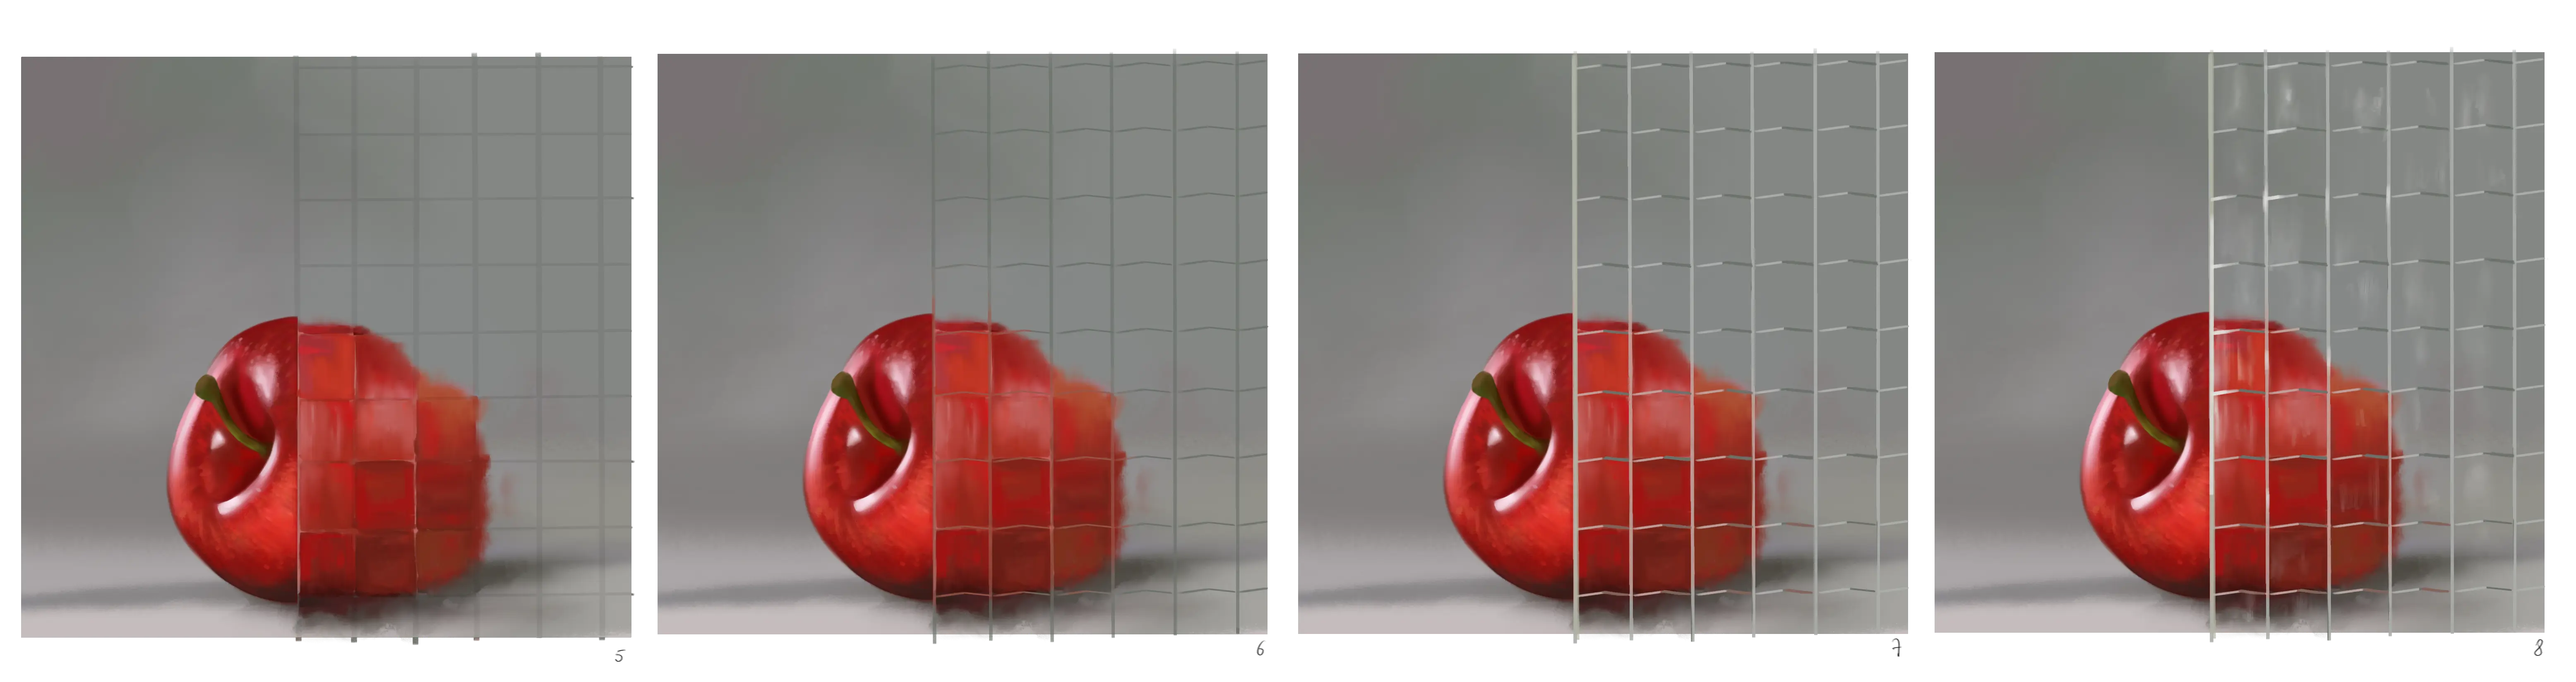 dessin d’une pomme derrière une paroi transparente